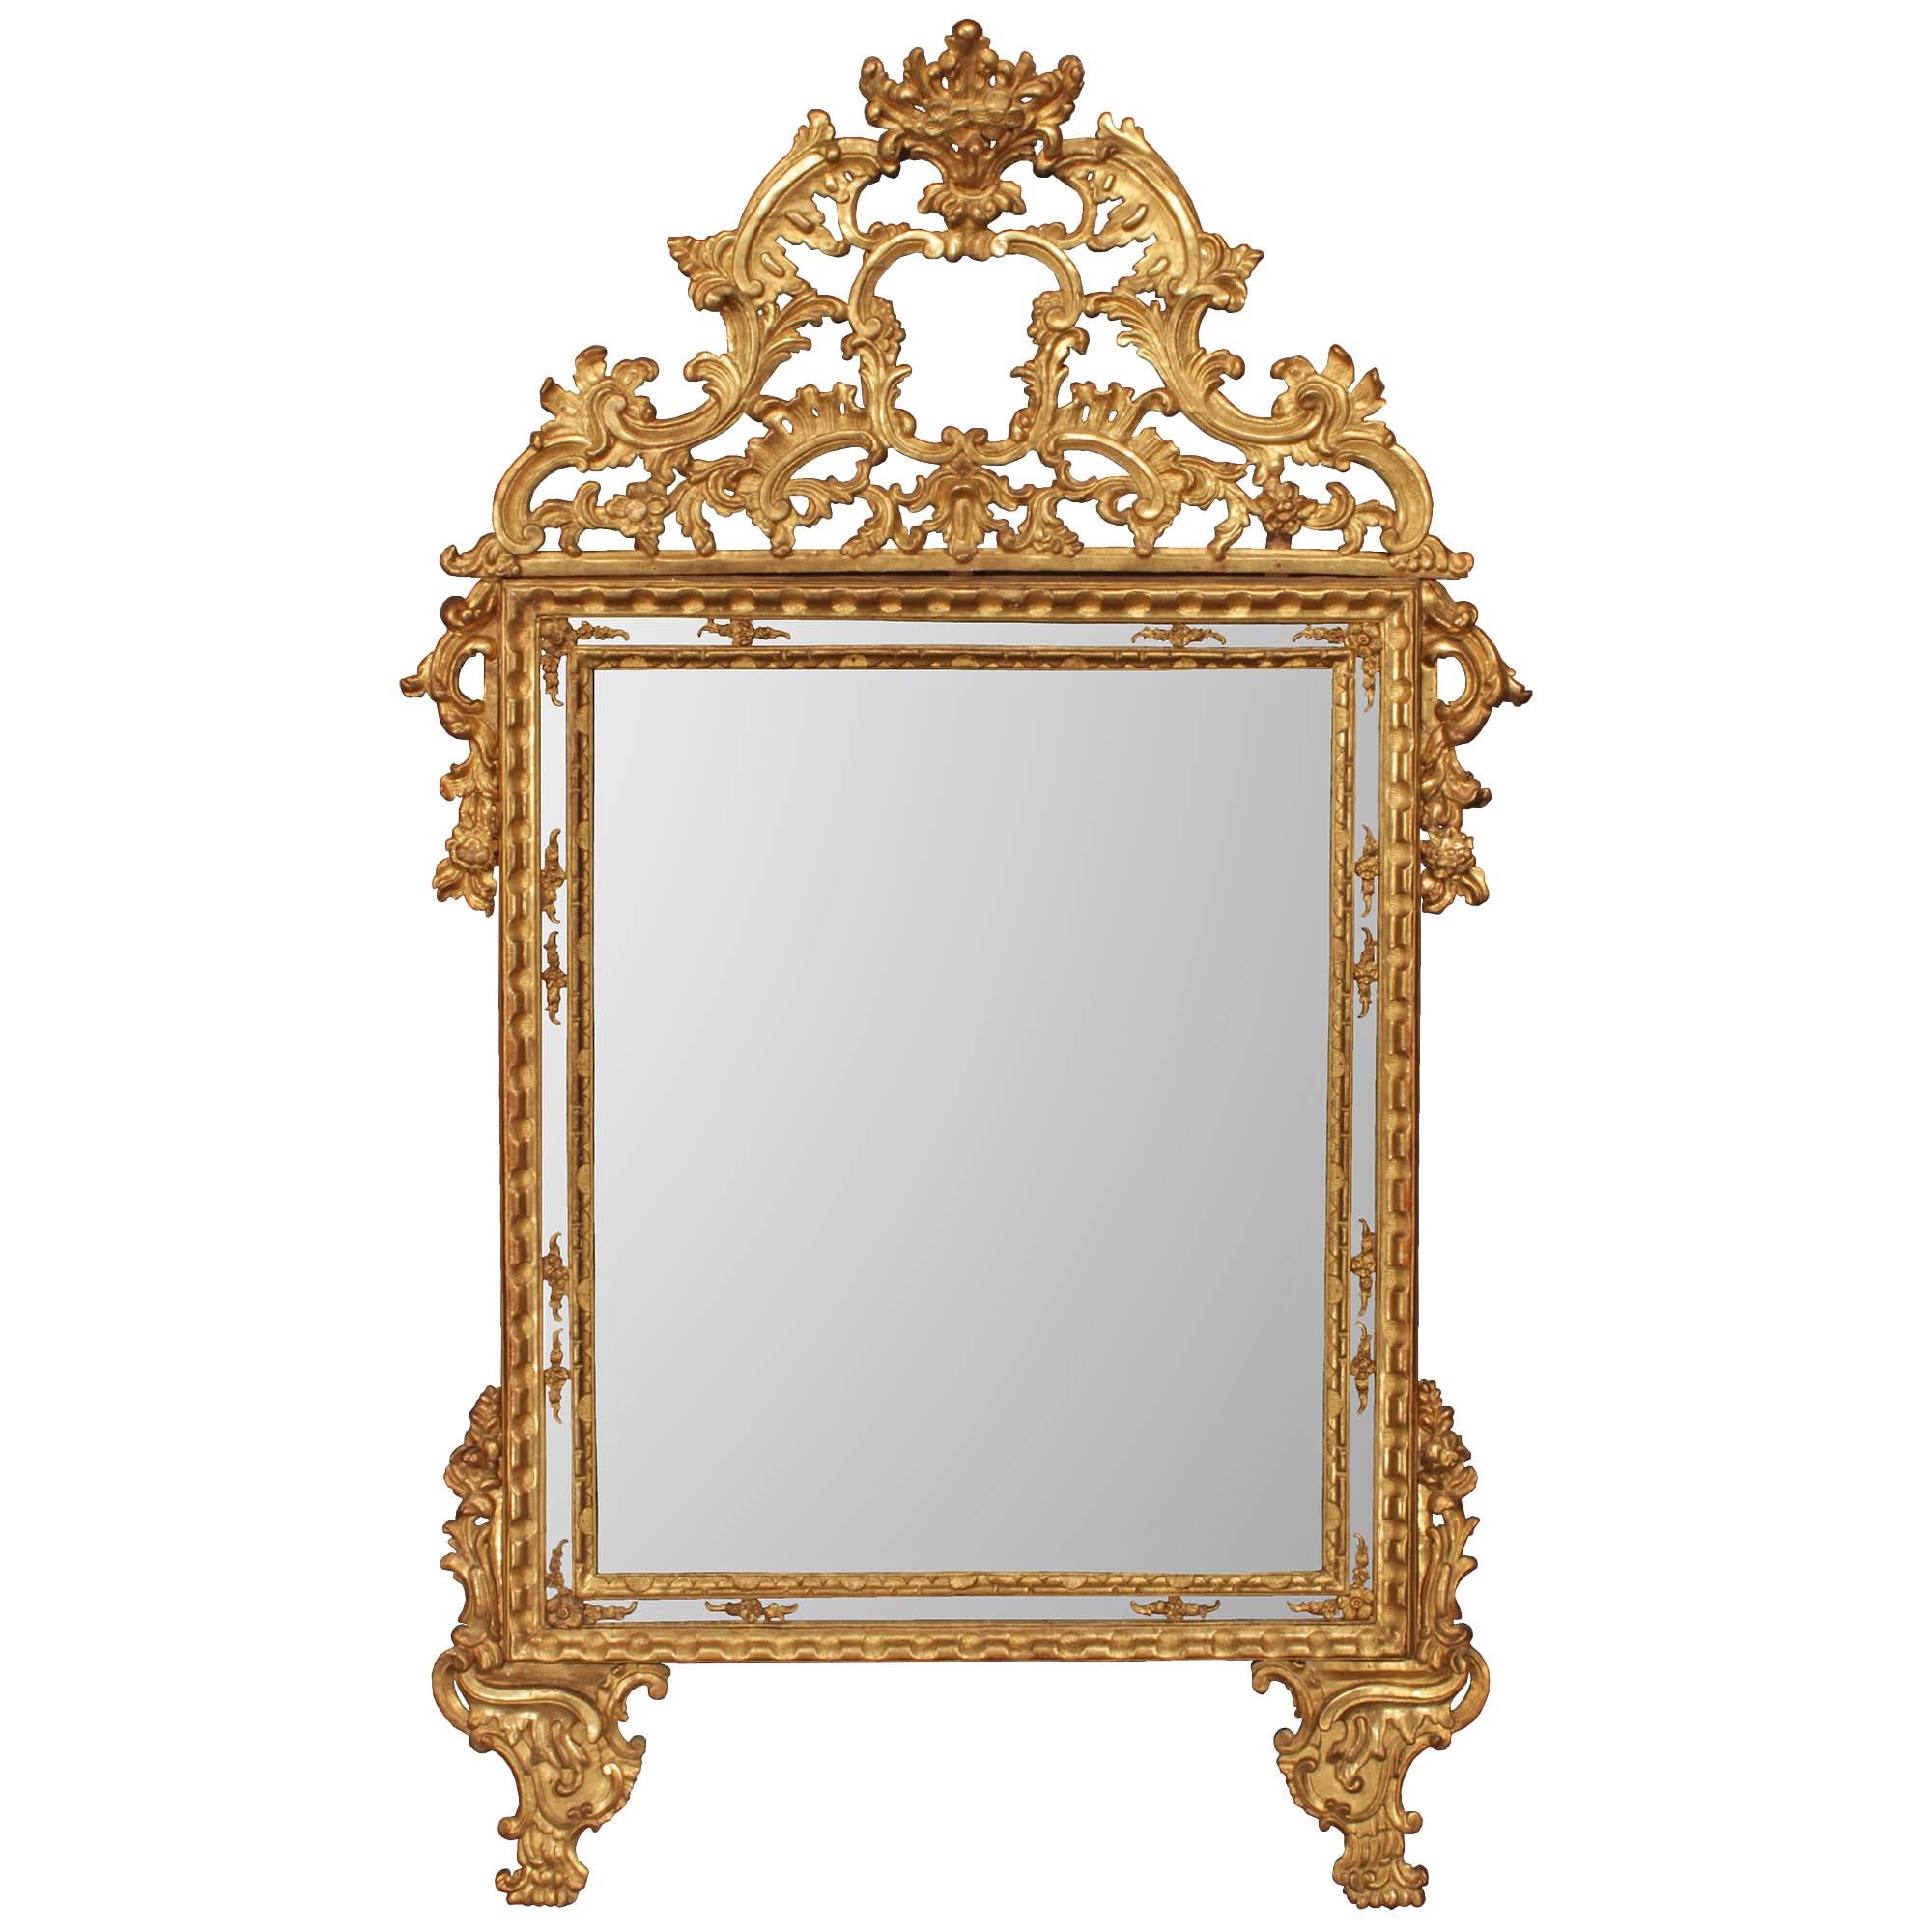 Miroir italien en bois doré à double cadre d'époque Louis XIV du 18ème siècle